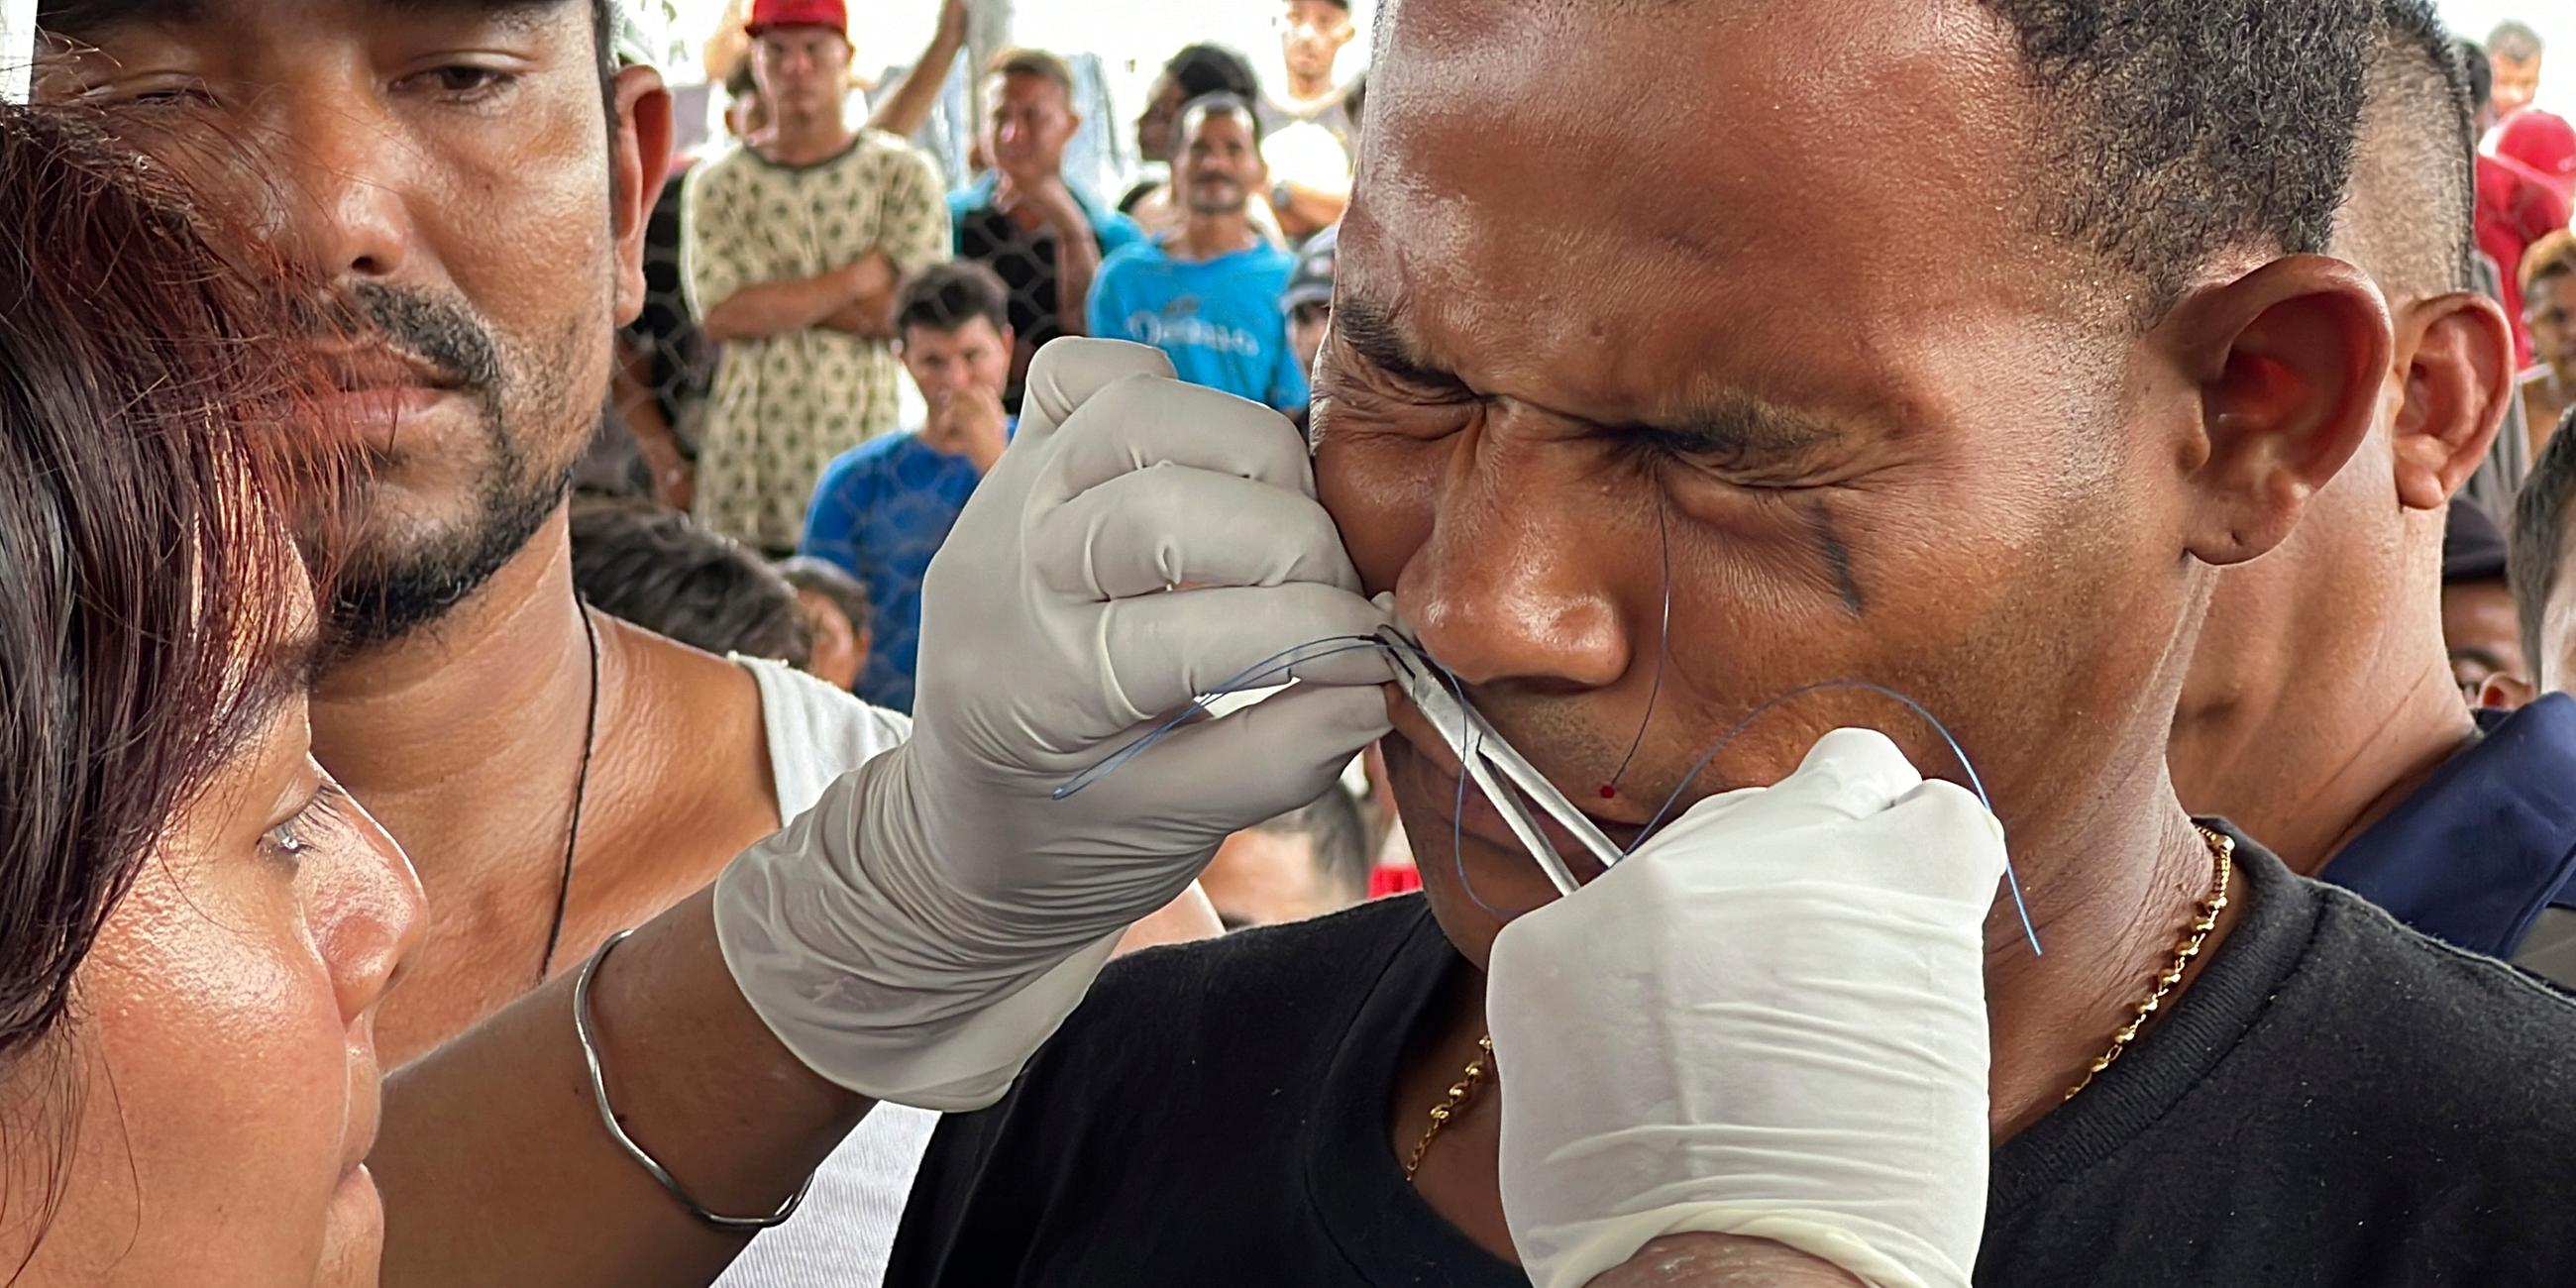 Ein Migrant lässt sich in Mexiko die Lippen zunähen - ein Protest.